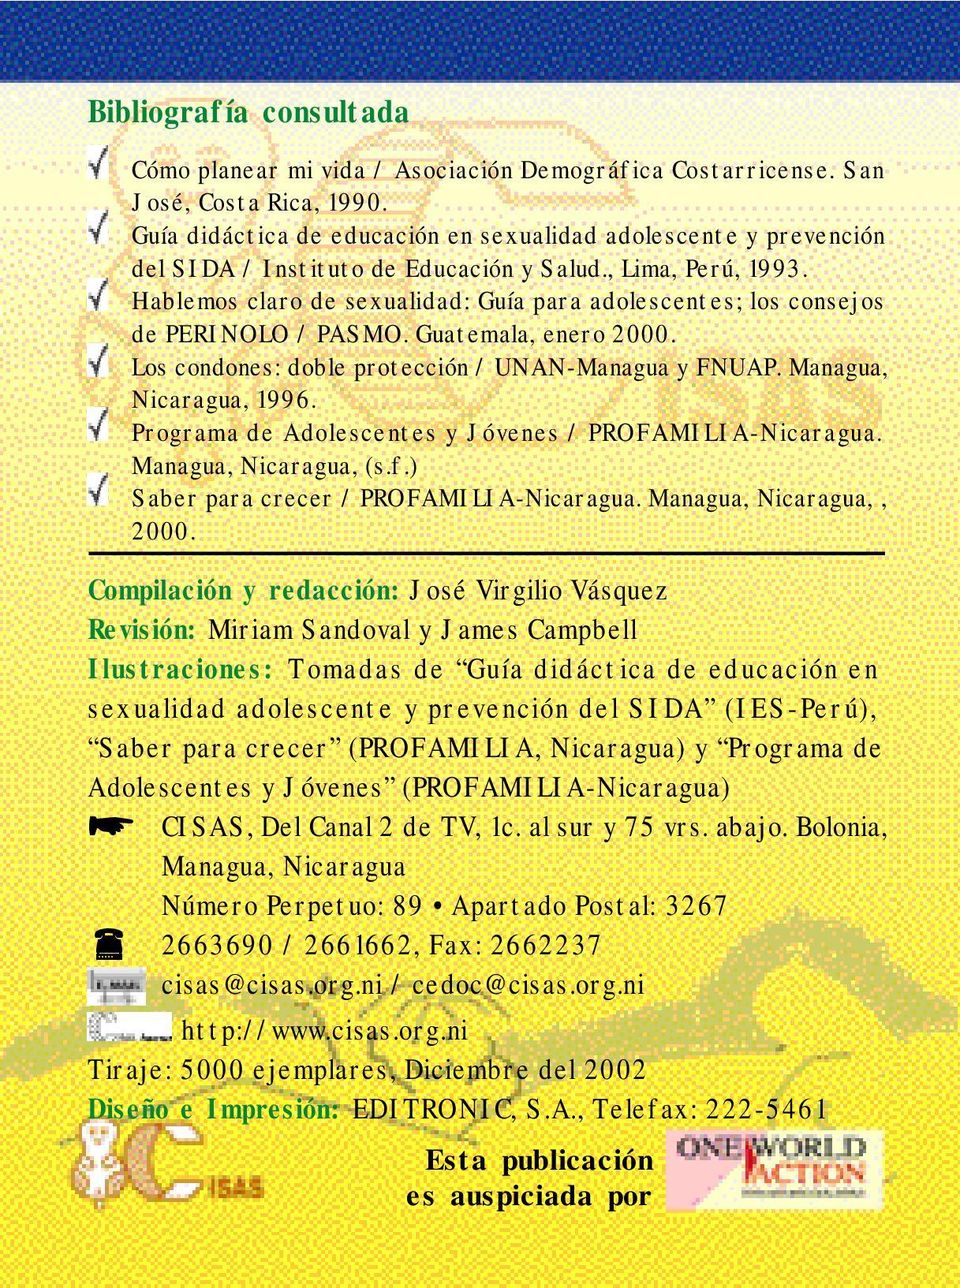 Hablemos claro de sexualidad: Guía para adolescentes; los consejos de PERINOLO / PASMO. Guatemala, enero 2000. Los condones: doble protección / UNAN-Managua y FNUAP. Managua, Nicaragua, 1996.